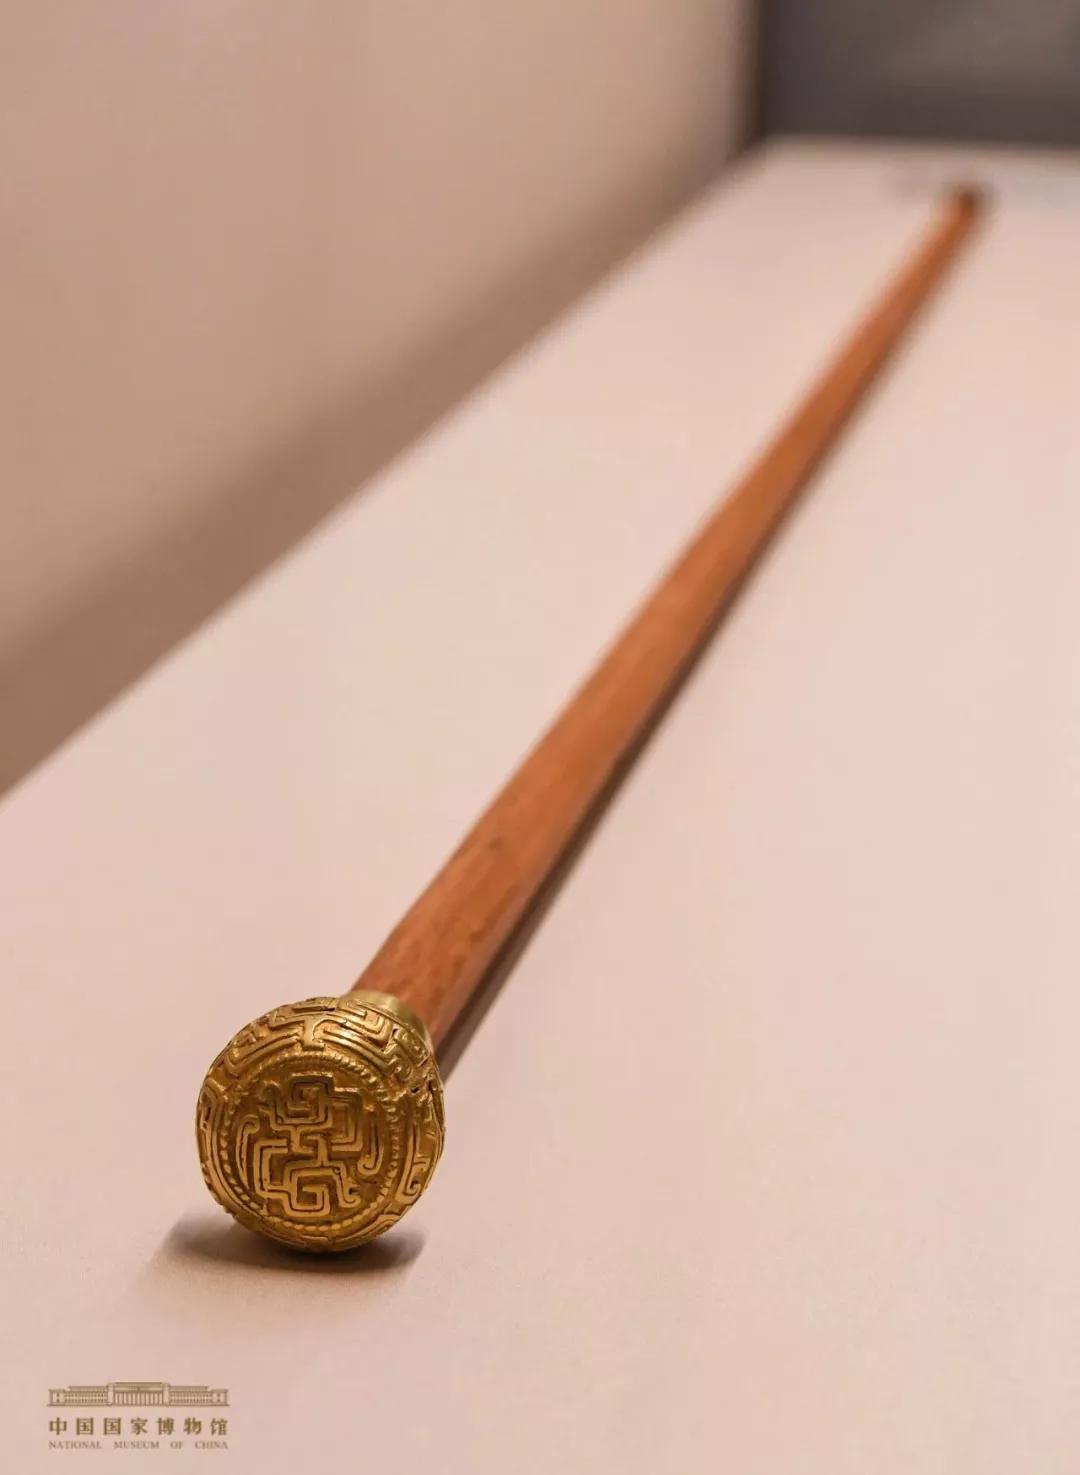 金首铜鐏权杖玉器的主要用途是礼仪和装饰,包括玉礼器,玉饰品,玉器具